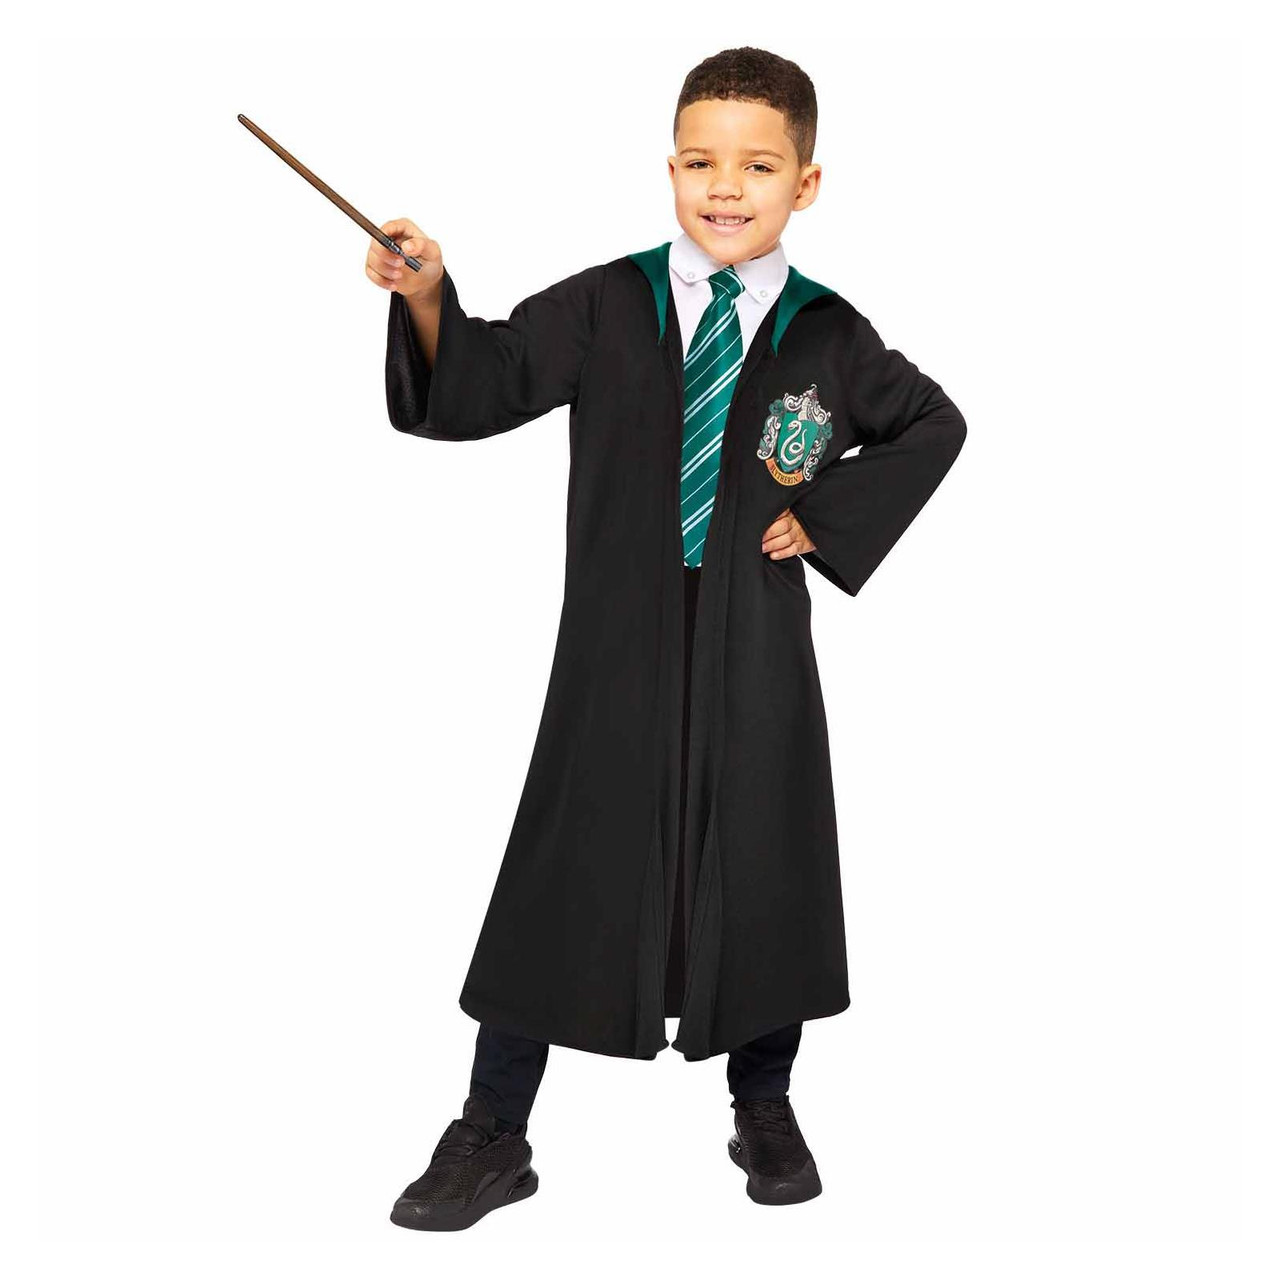 Slytherin Robe - Harry Potter